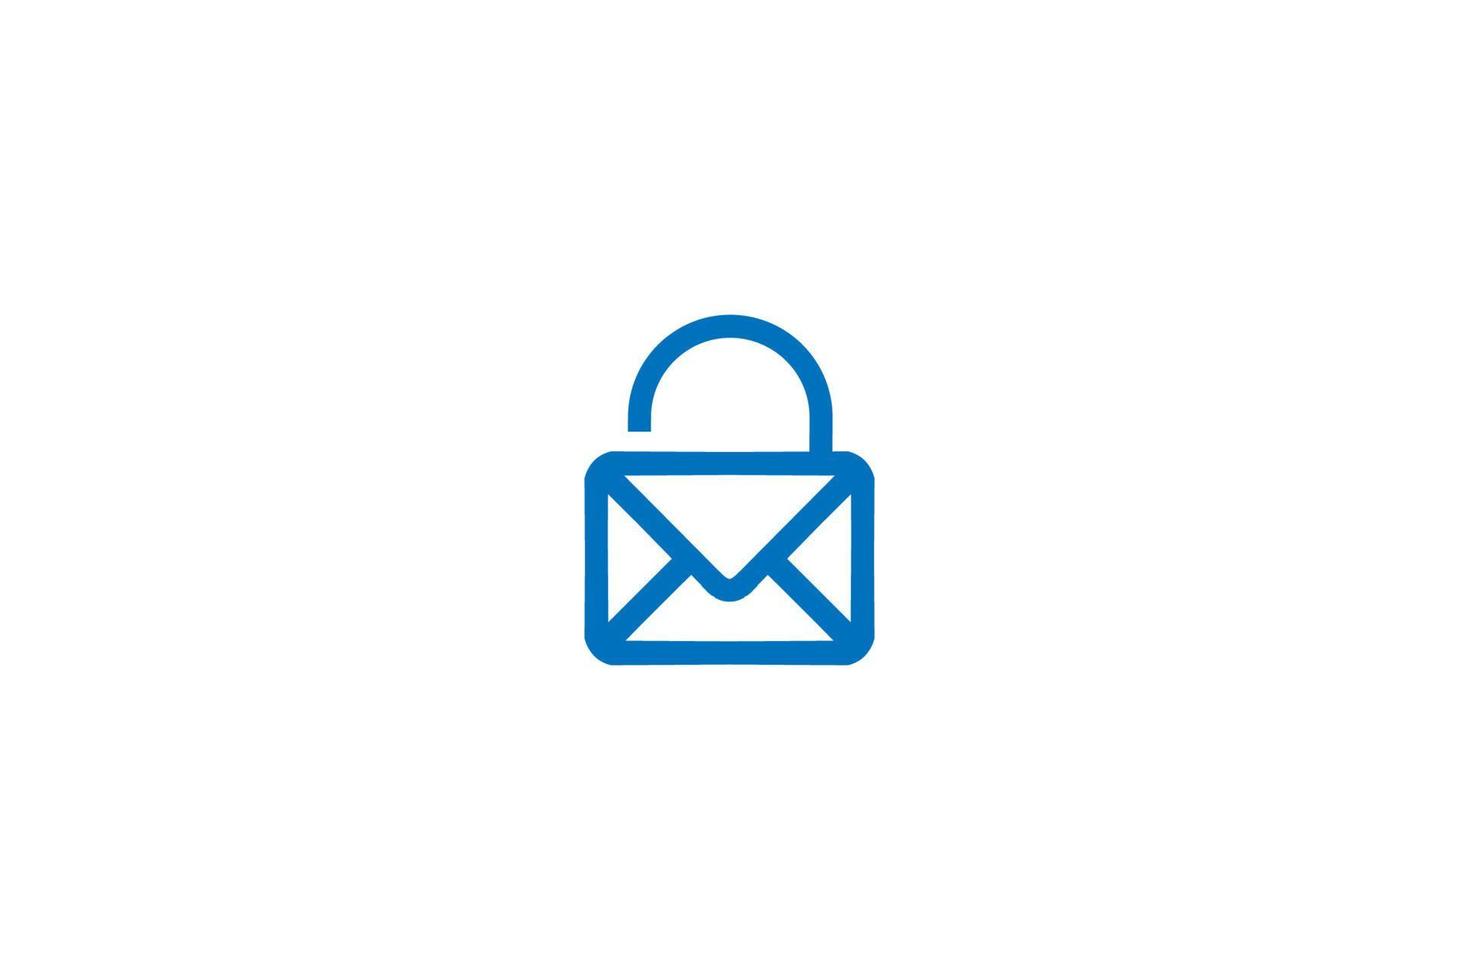 posta semplice con lucchetto per un messaggio sicuro segreto sicuro applicazione tecnologia logo design vector